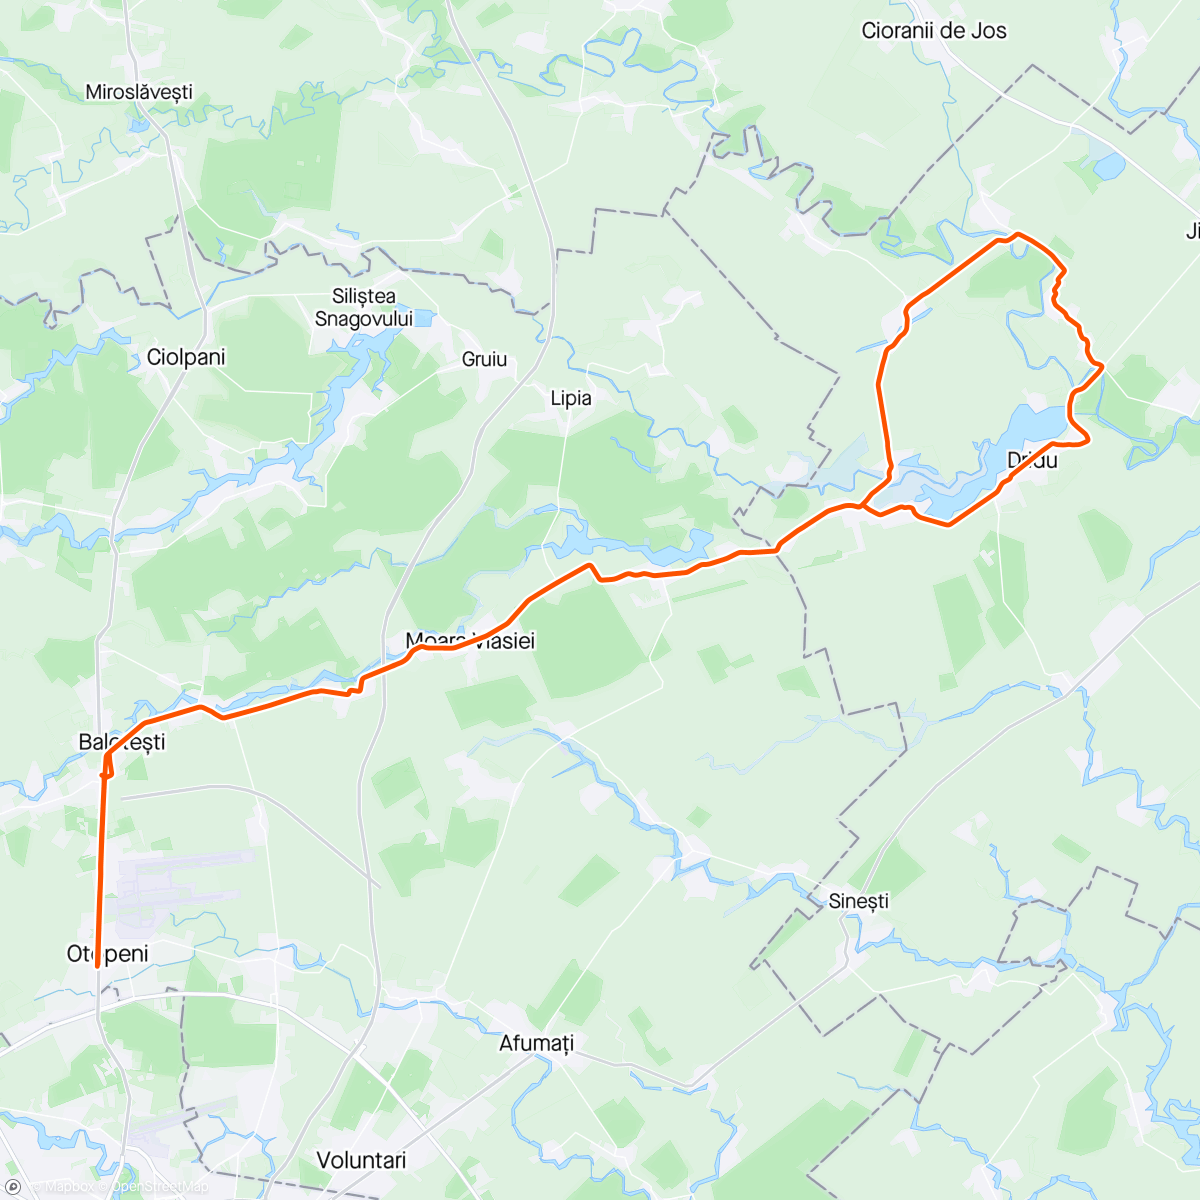 「Morning Ride de Florii, Dridu(Ecleruțe)」活動的地圖